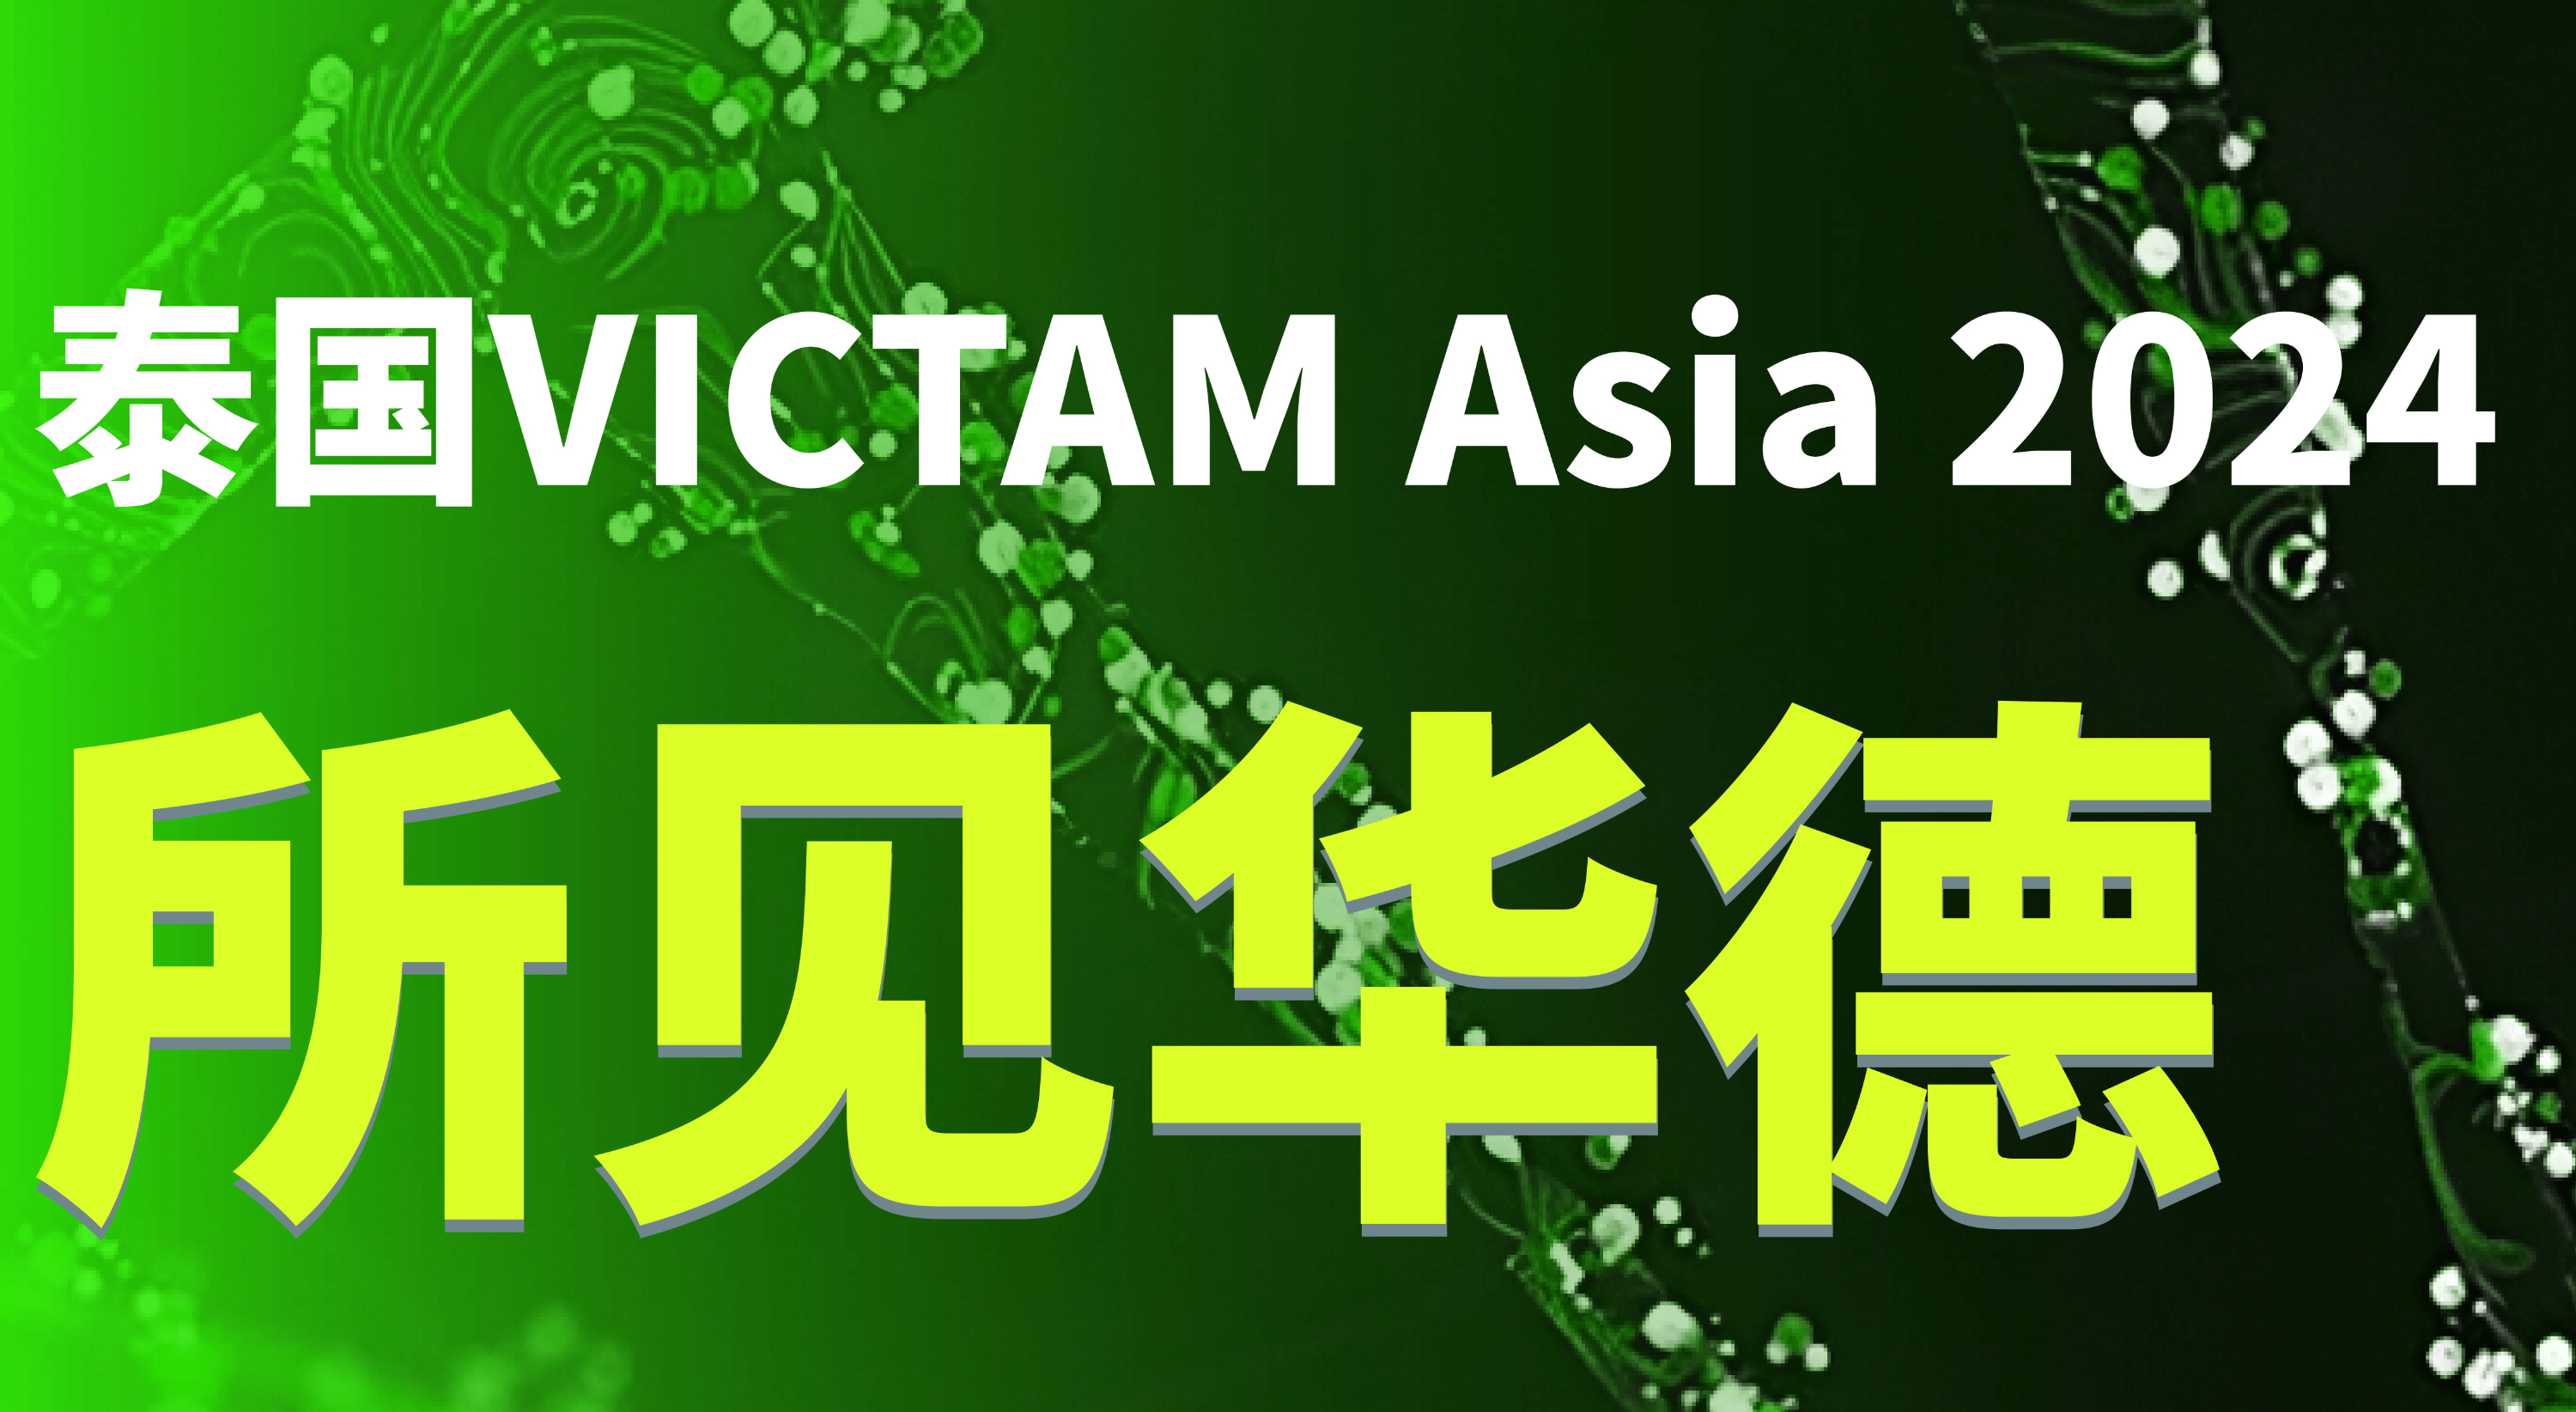 华德生物泰国VICTAM Asia 2024展会圆满结束!